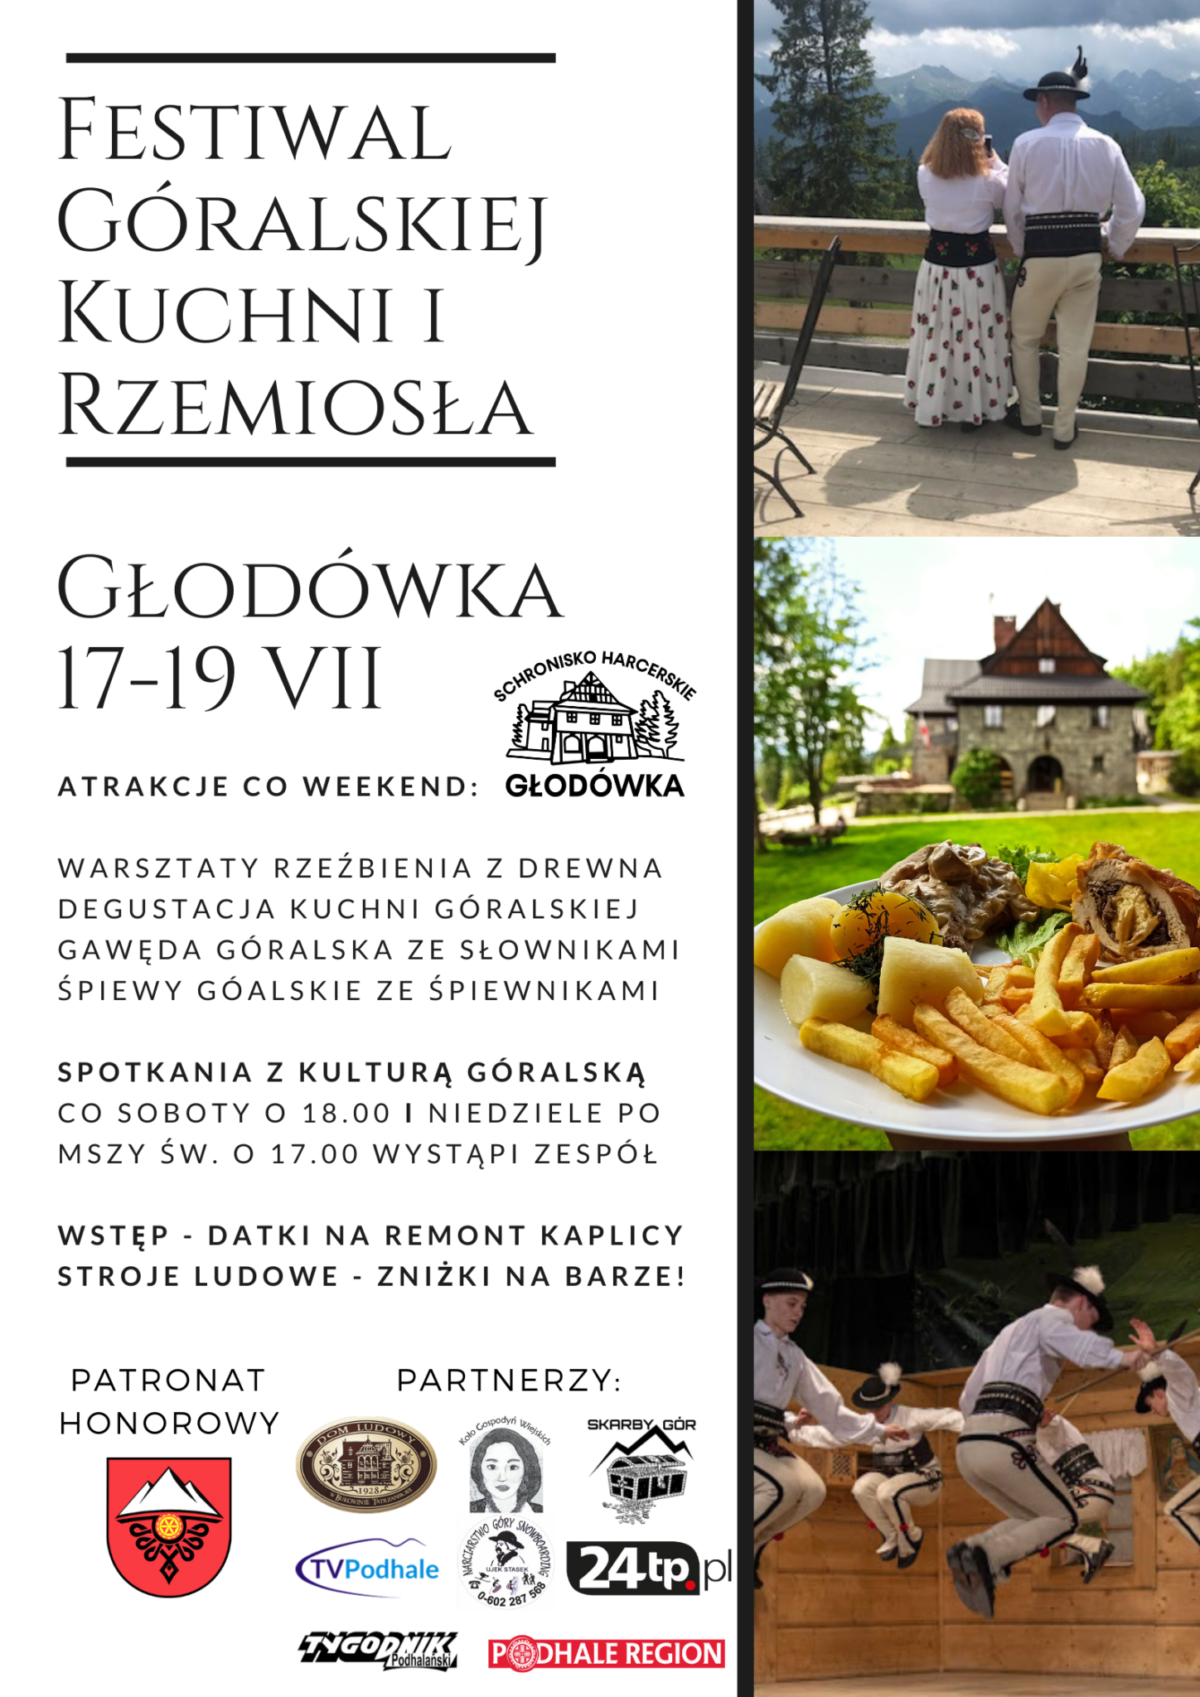 Glodowka_PR-Festiwal-Kuchni-i-Rzemiosła-Góralskiego-17-19-VII-15-VII-2-1200x1697.png